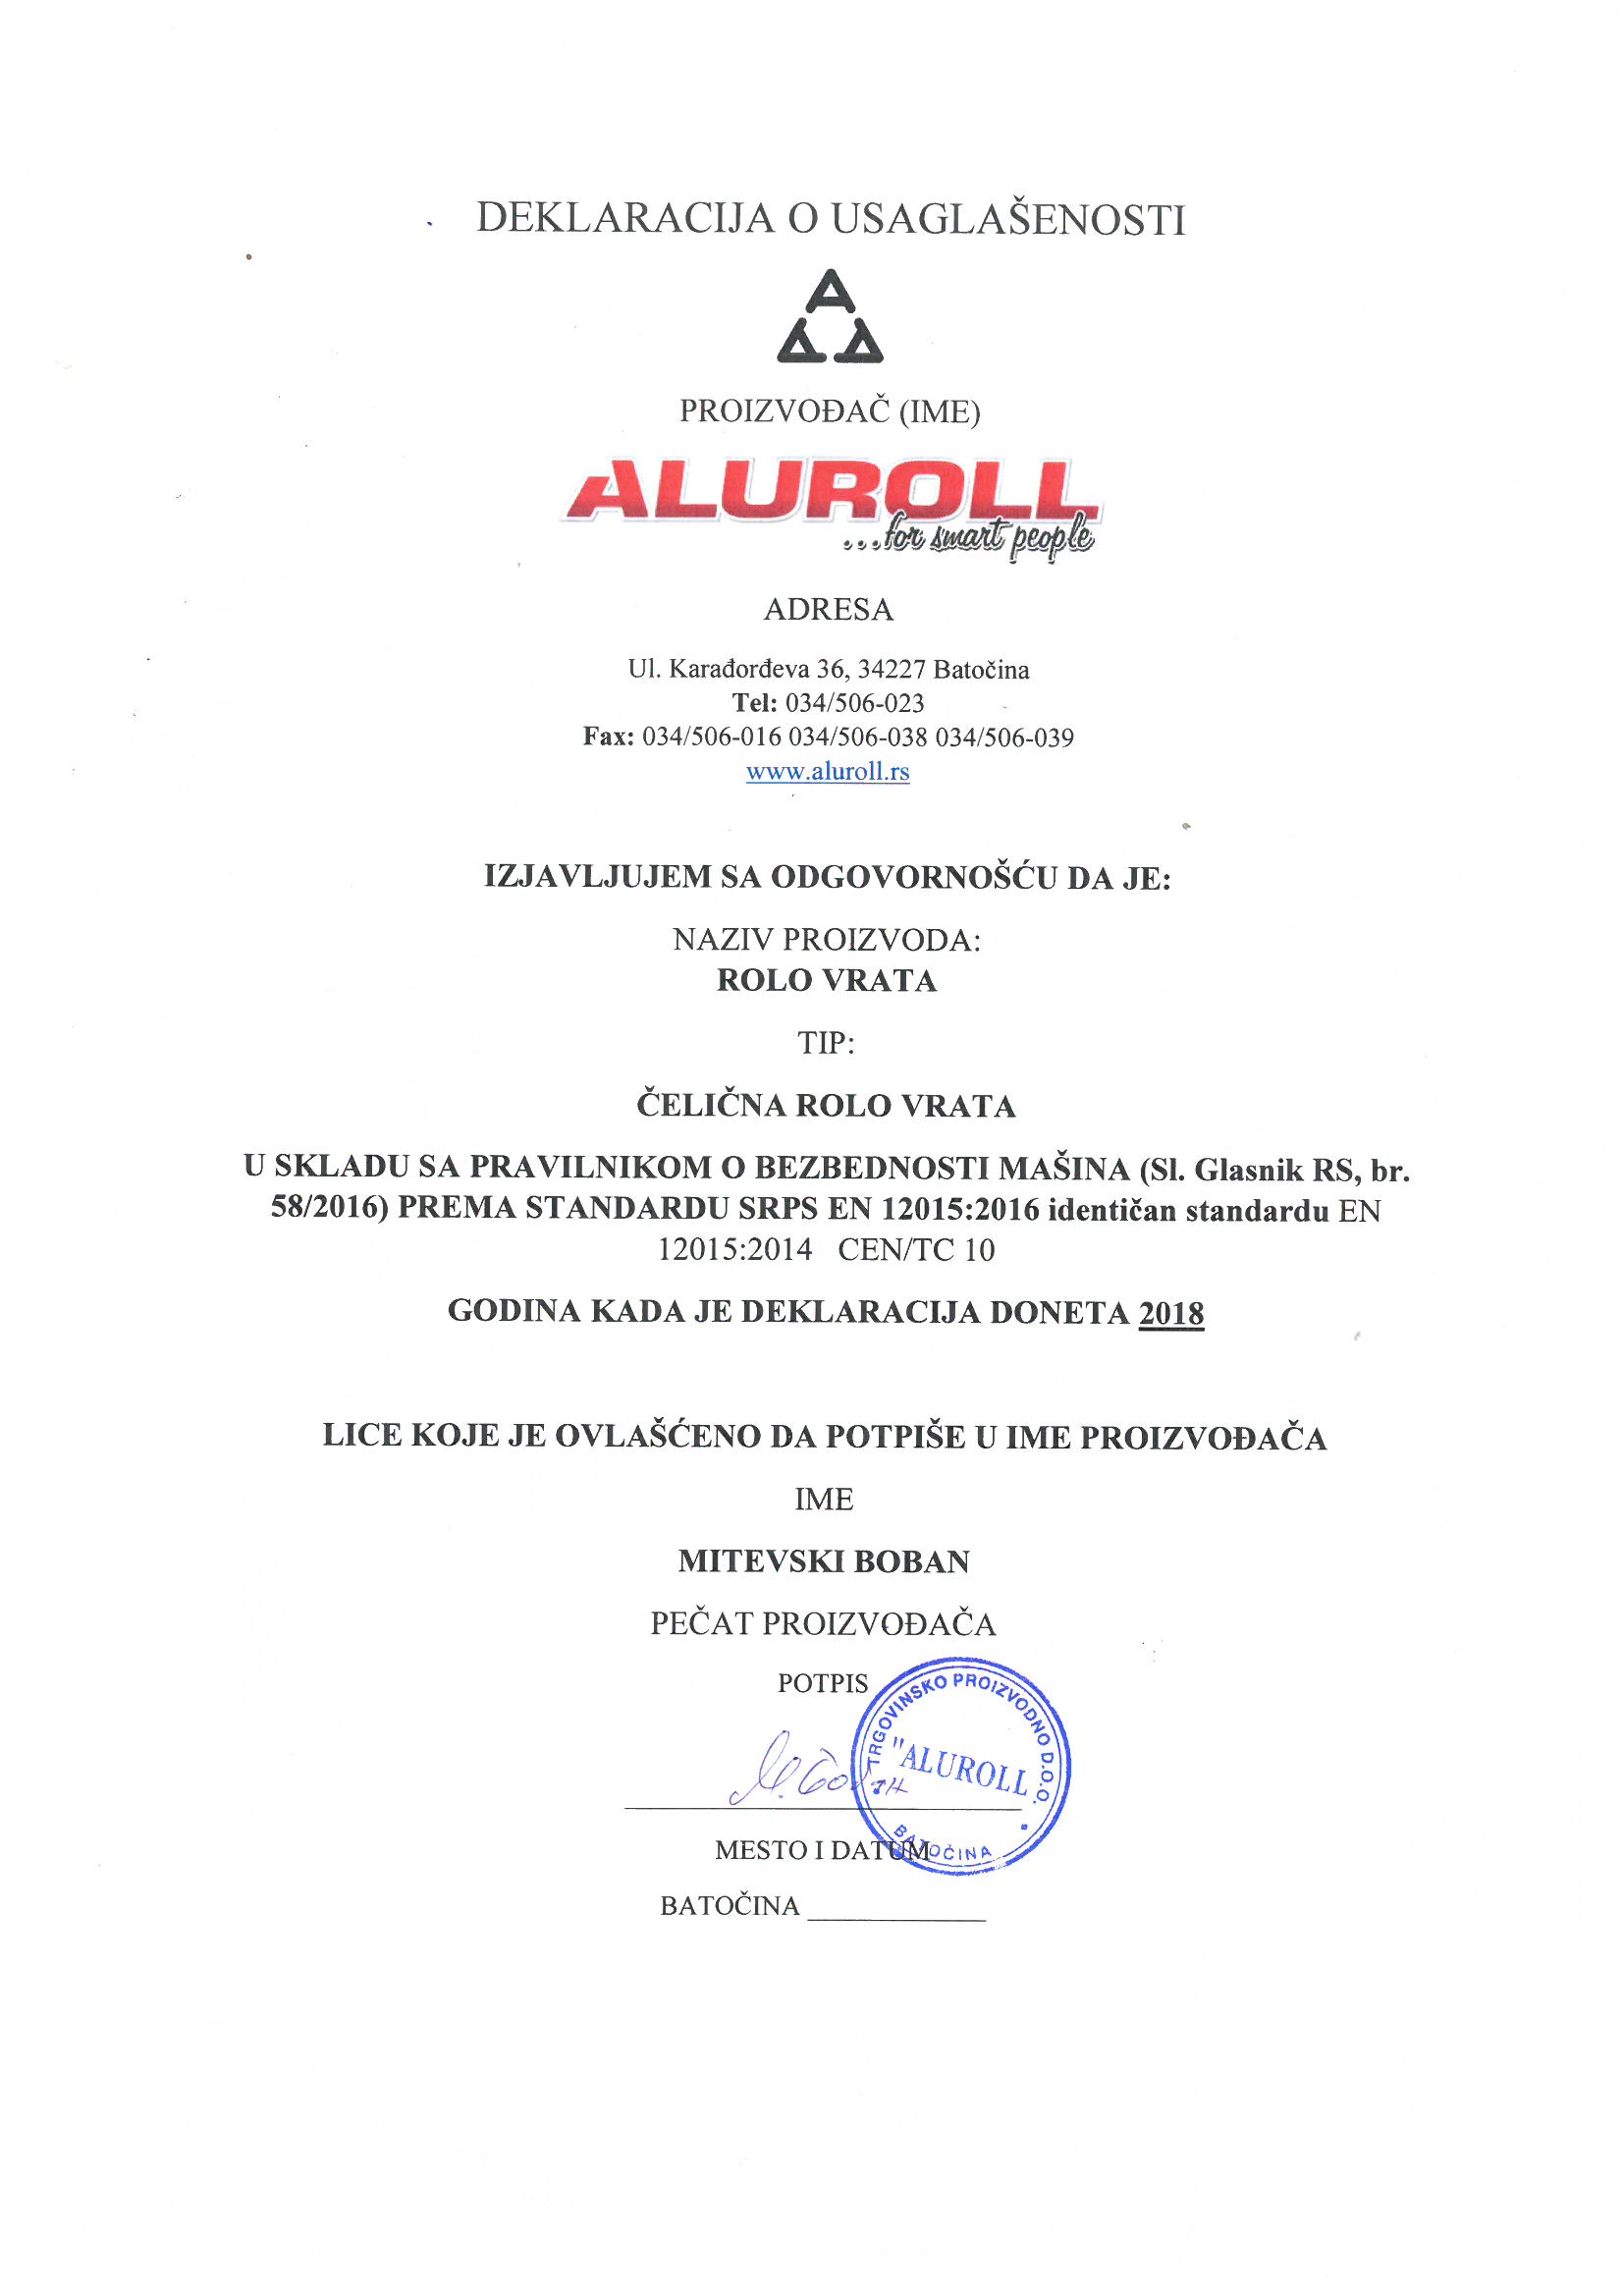 CE serifikati za rolo vrata Aluroll